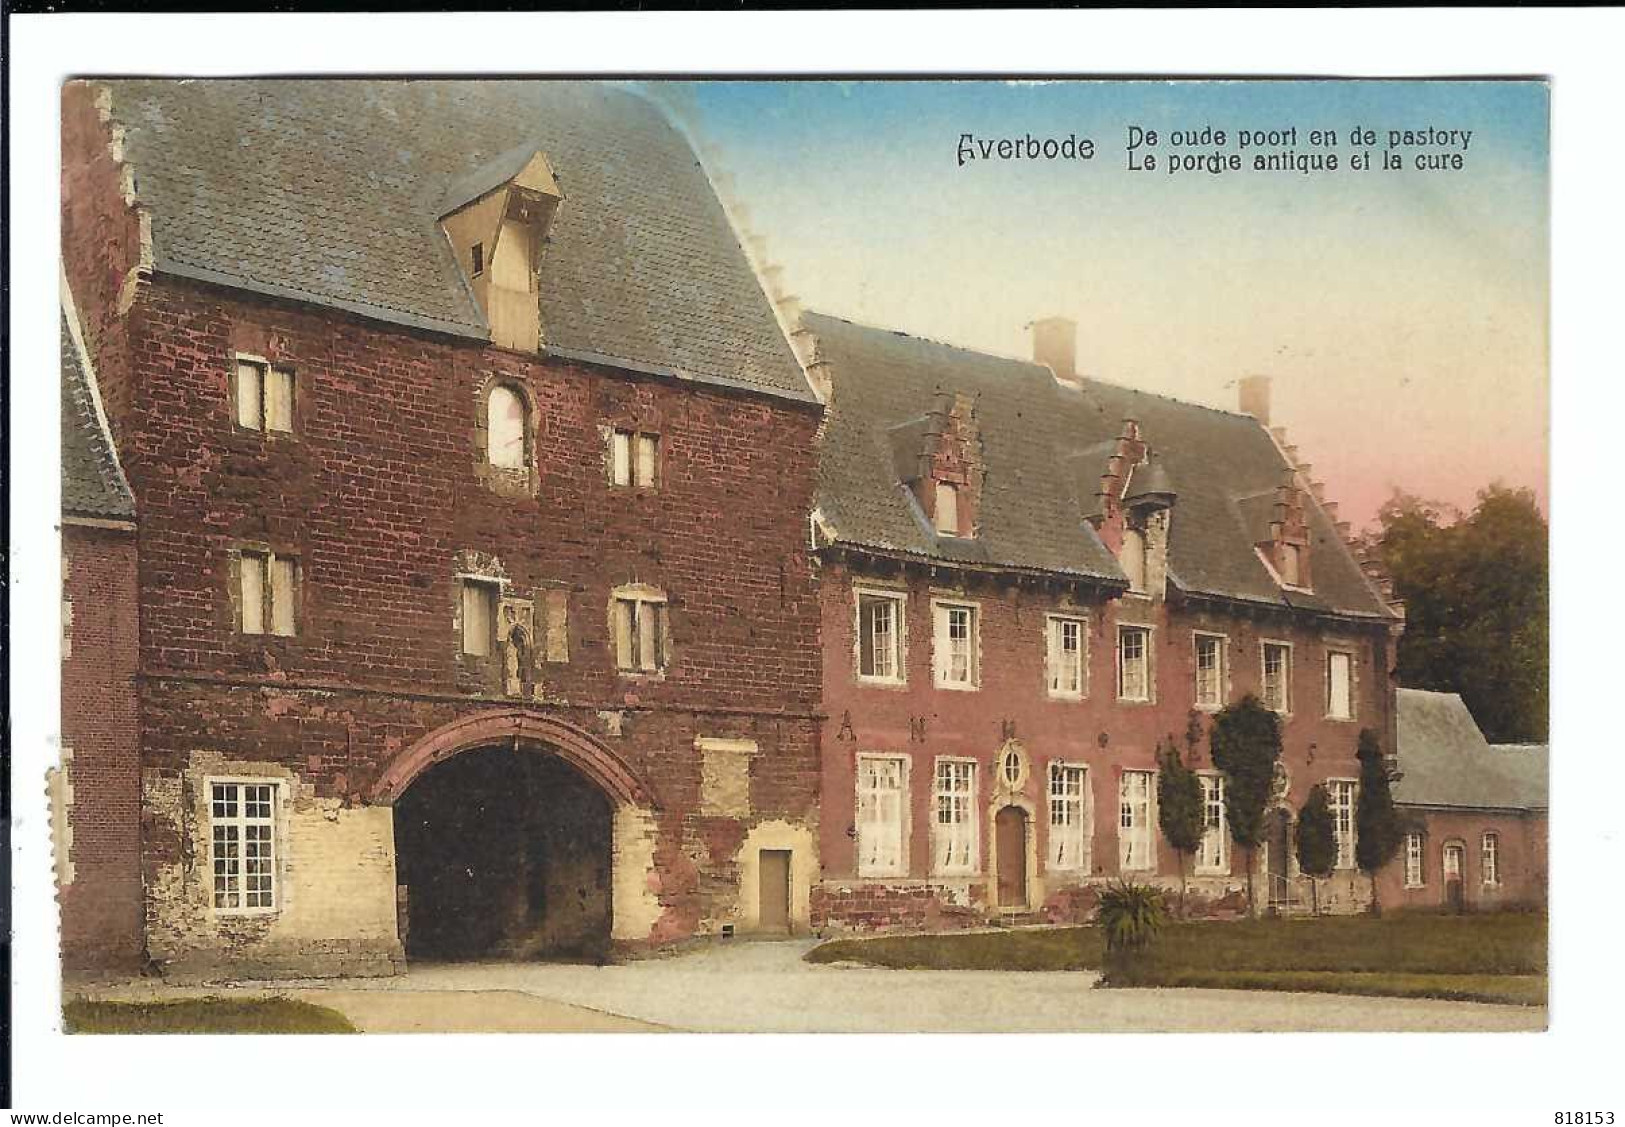 Averbode  1910  De Oude Poort En De Pastory   5185   Uitg J Wouters-van Den Bulck , Averbode - Scherpenheuvel-Zichem